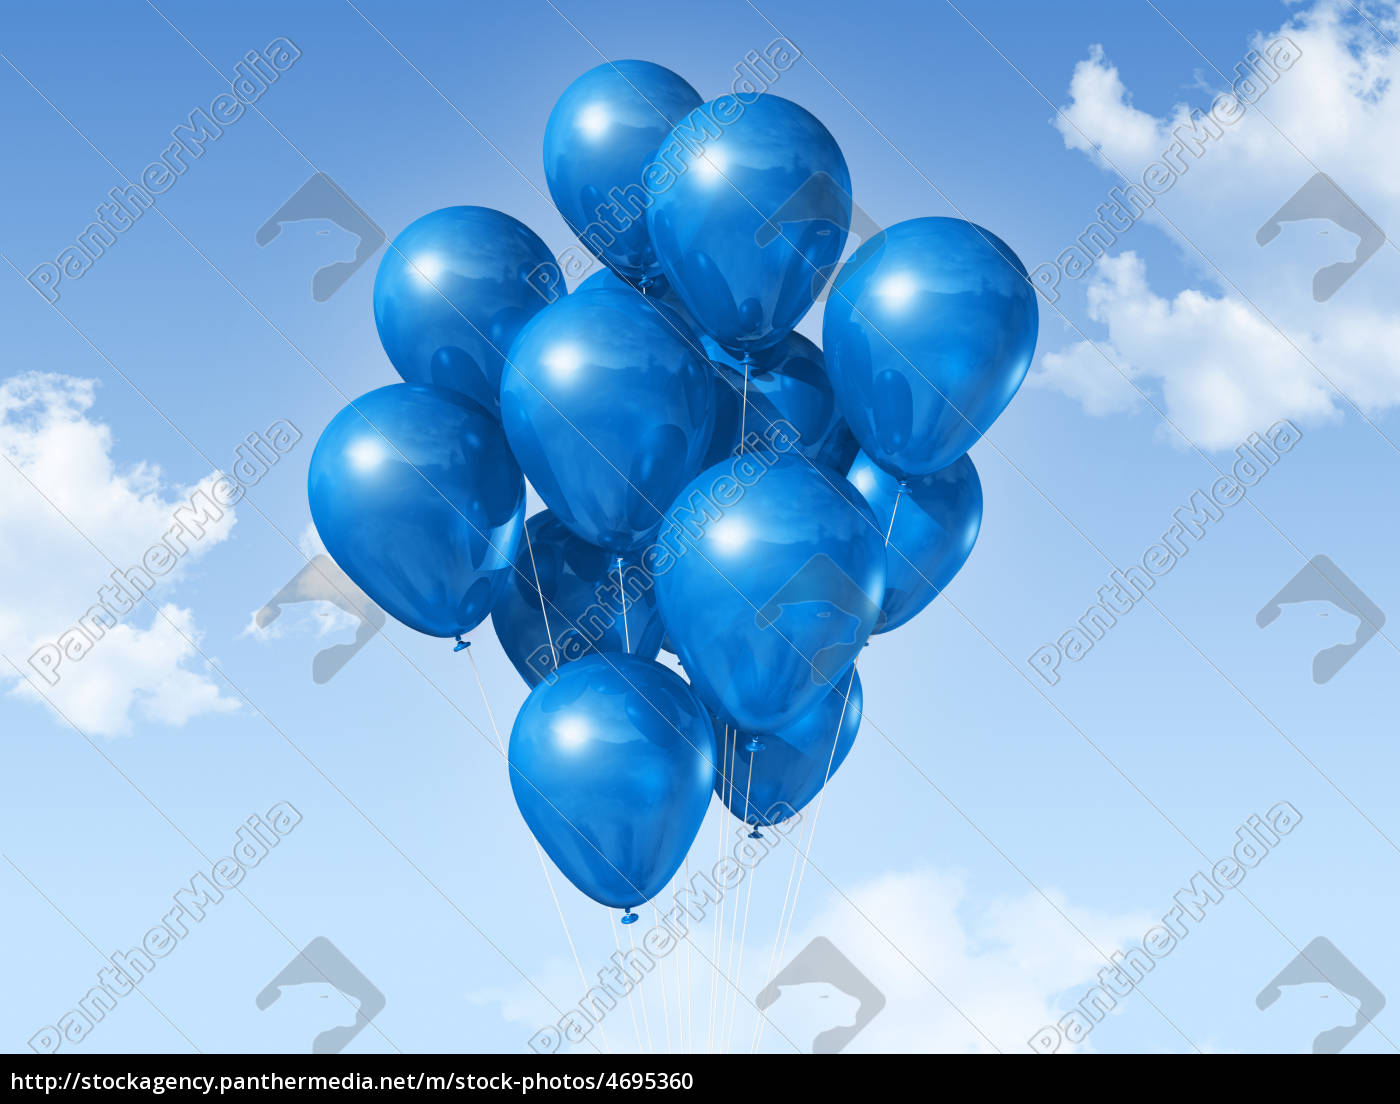 globos azules en un cielo azul - Stockphoto #4695360